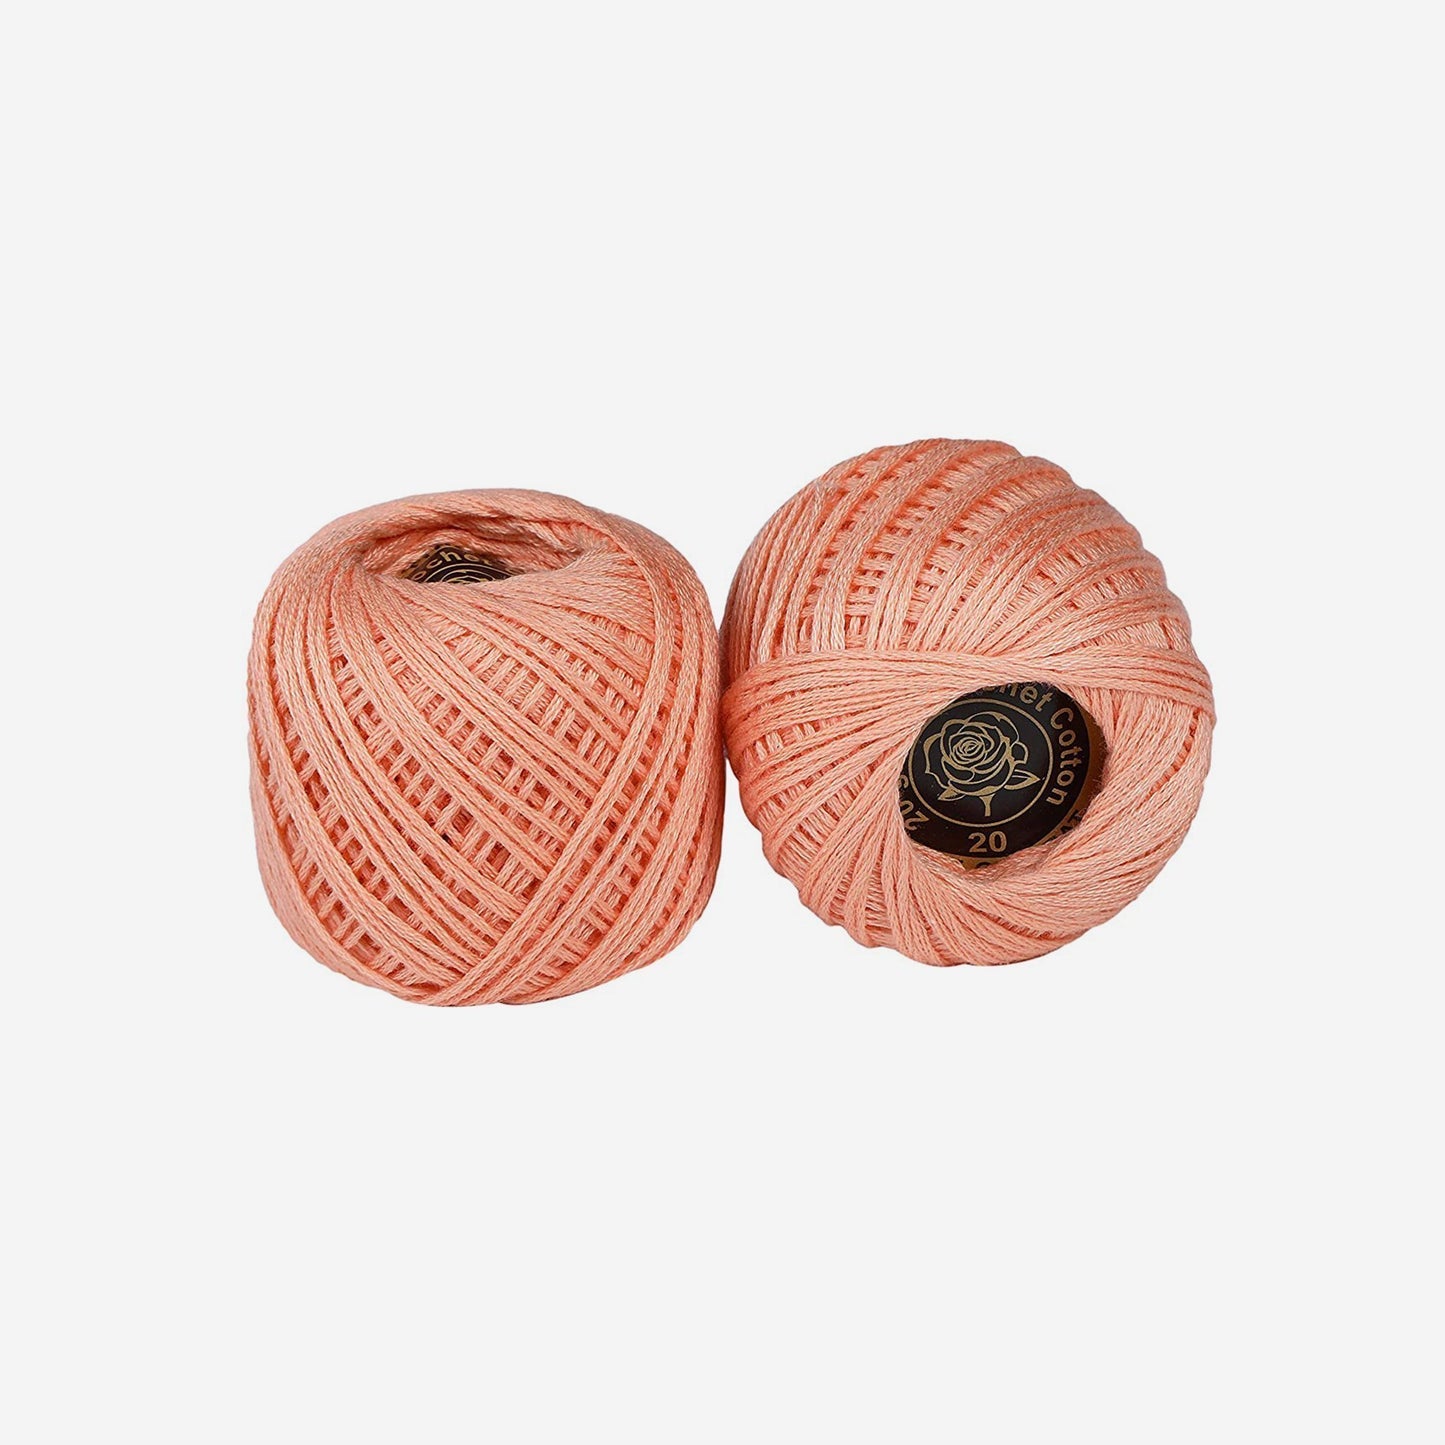 Hand-crochet hoops (Variation 21)